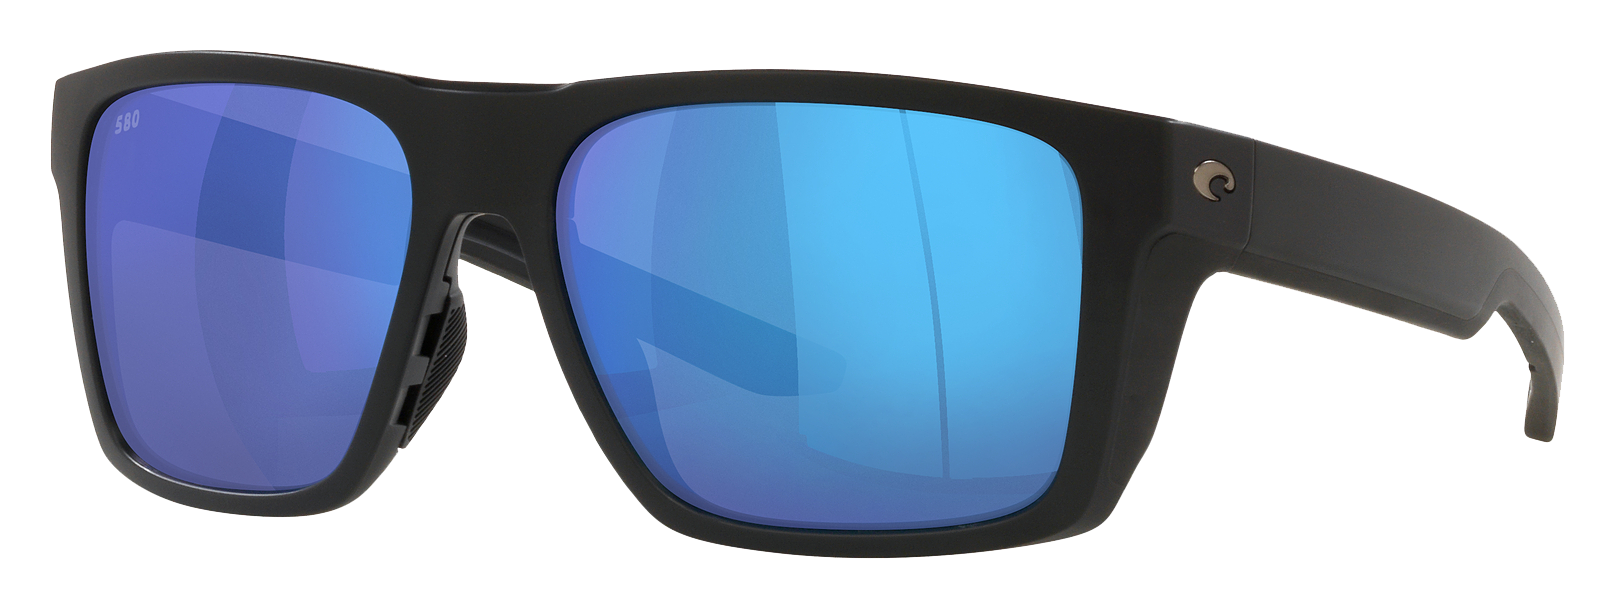 Costa Del Mar Lido 580G Glass Polarized Sunglasses